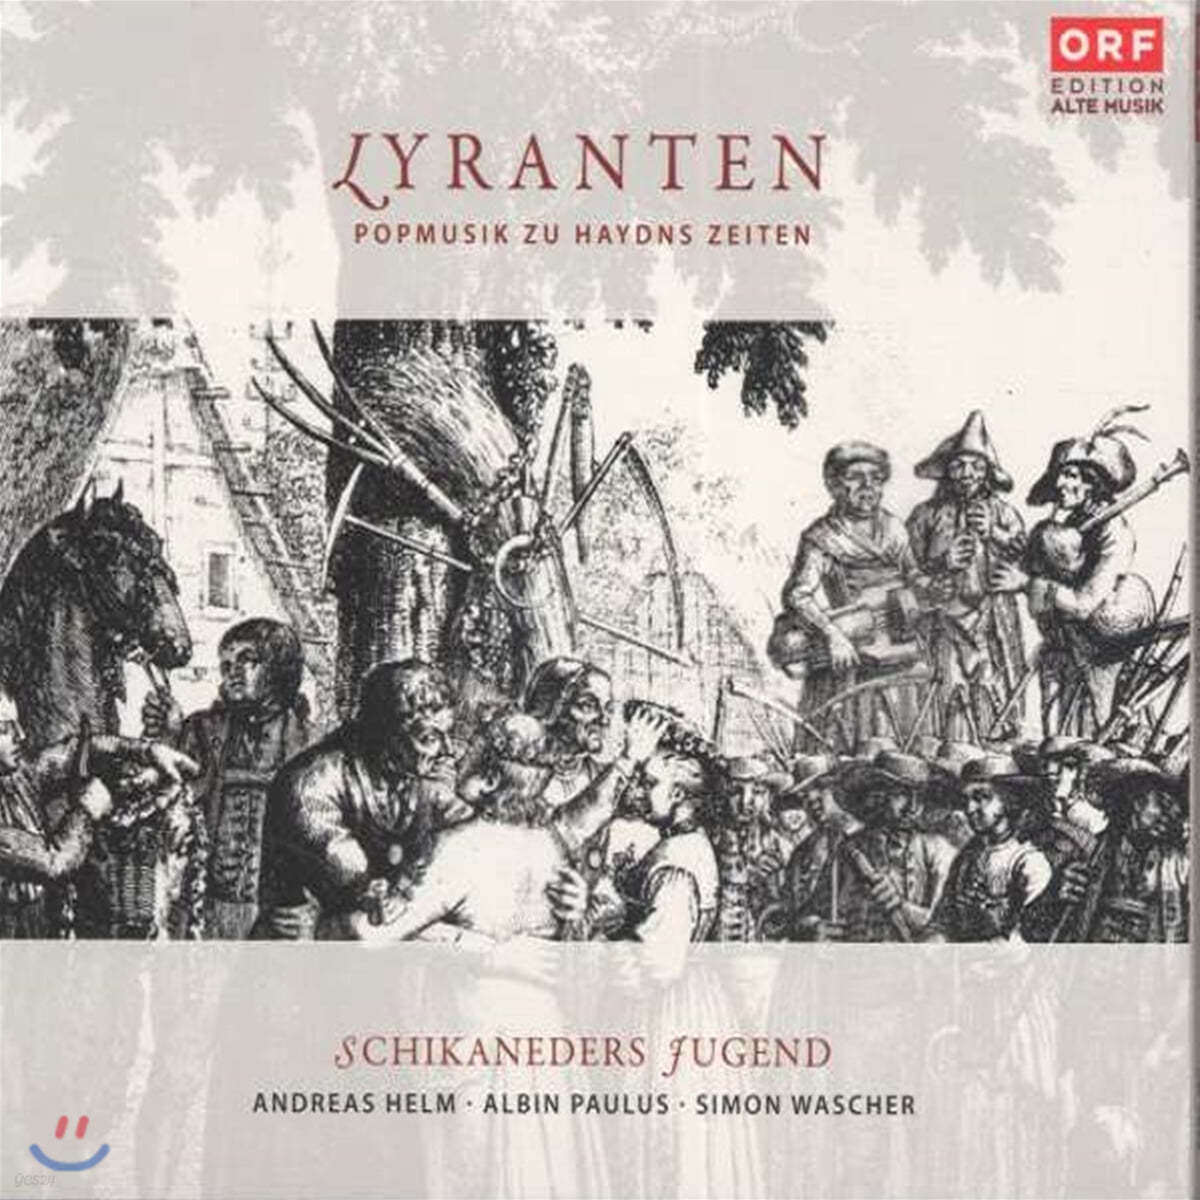 Schikaneders Jugend 리란텐 - 하이든 시대의 대중음악 (Lyranten - Popmusik Zu Haydns Zeiten)